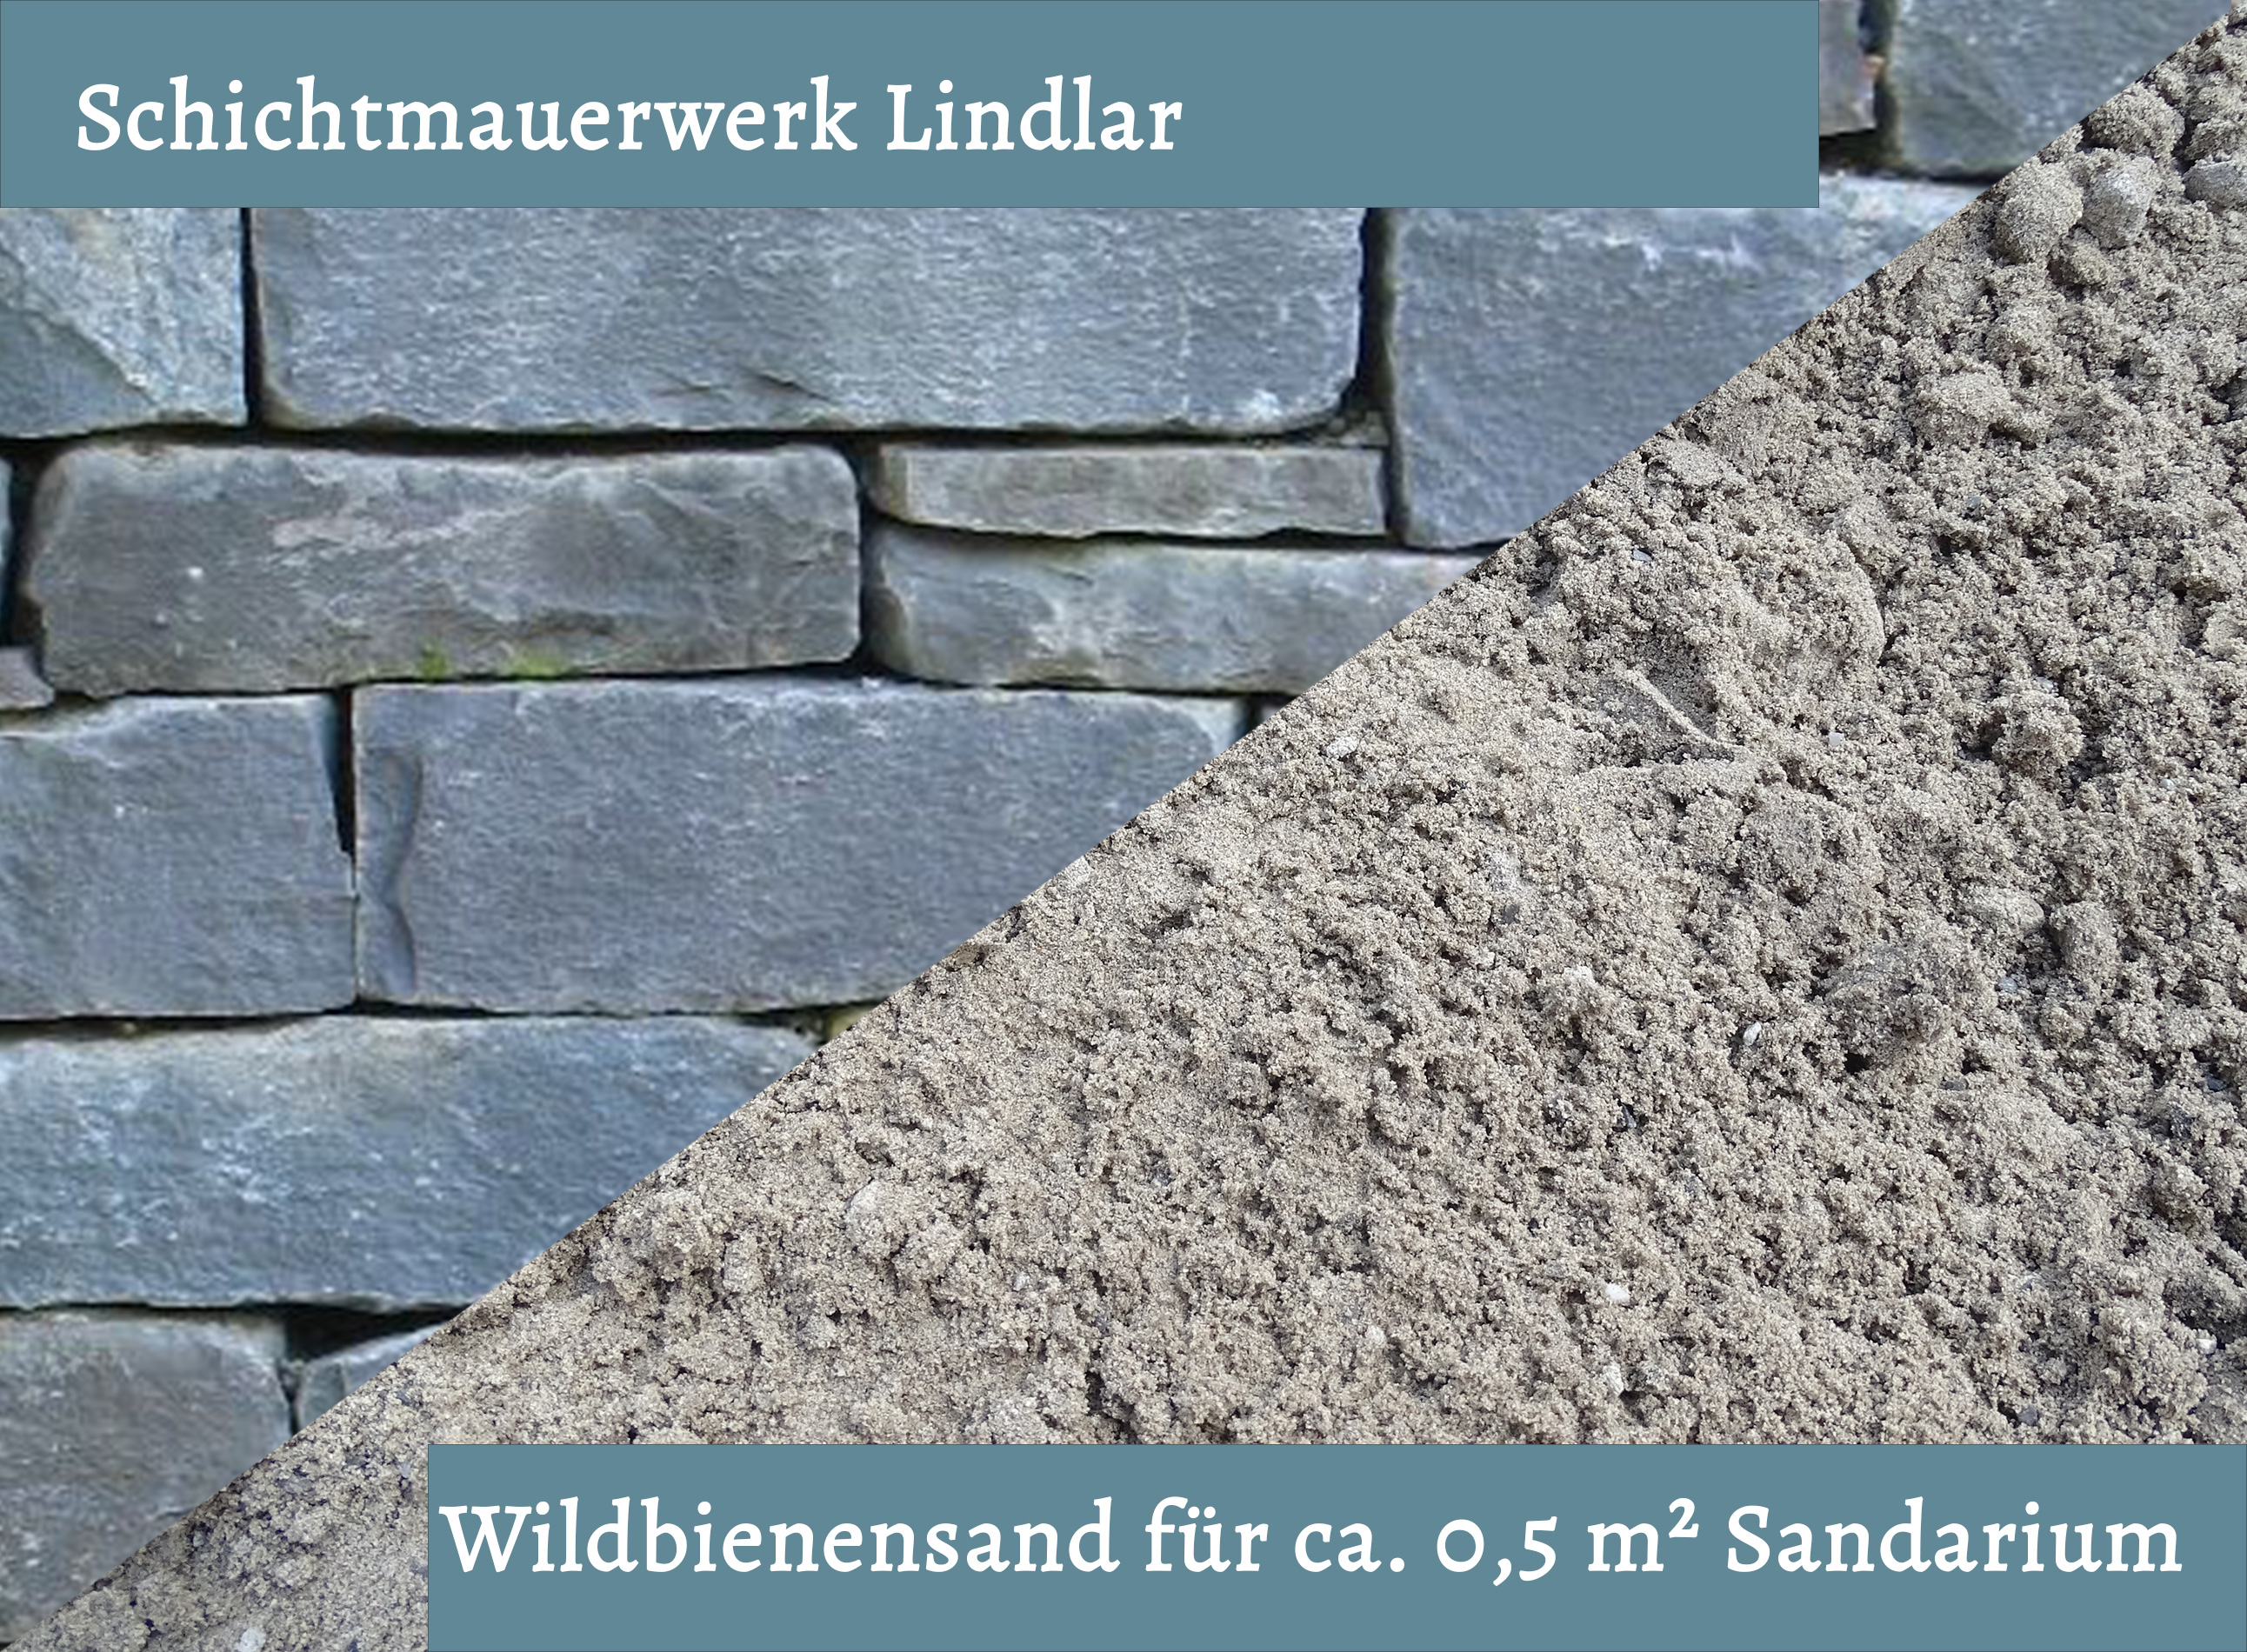 Wildbienensand mit Schichtmauer Lindlar für Sandarium 0,5 m²